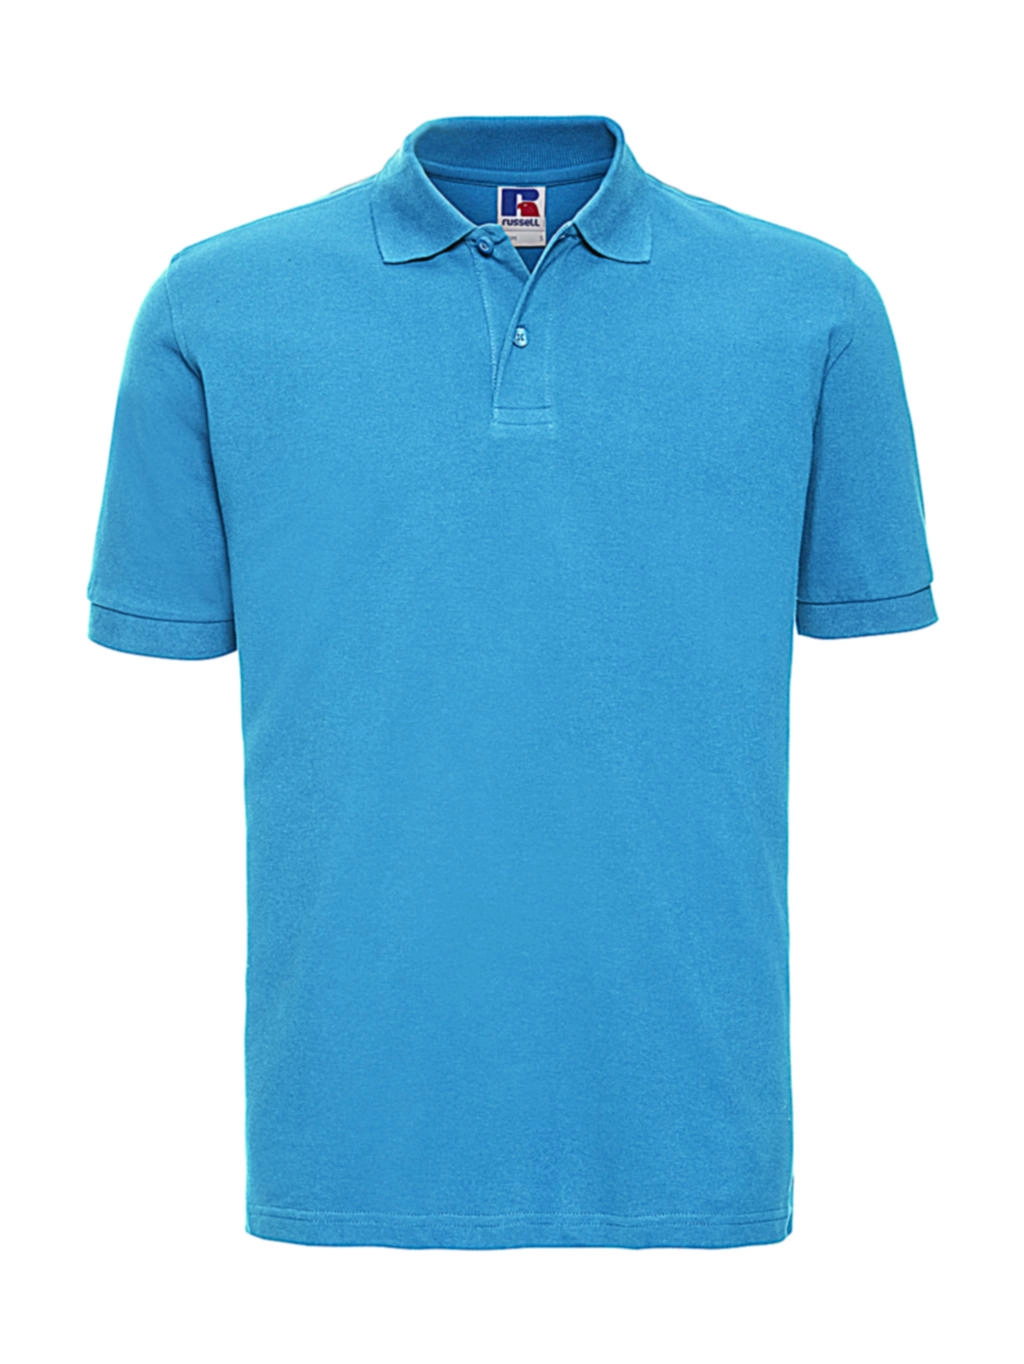 Men`s Classic Cotton Polo zum Besticken und Bedrucken in der Farbe Turquoise mit Ihren Logo, Schriftzug oder Motiv.